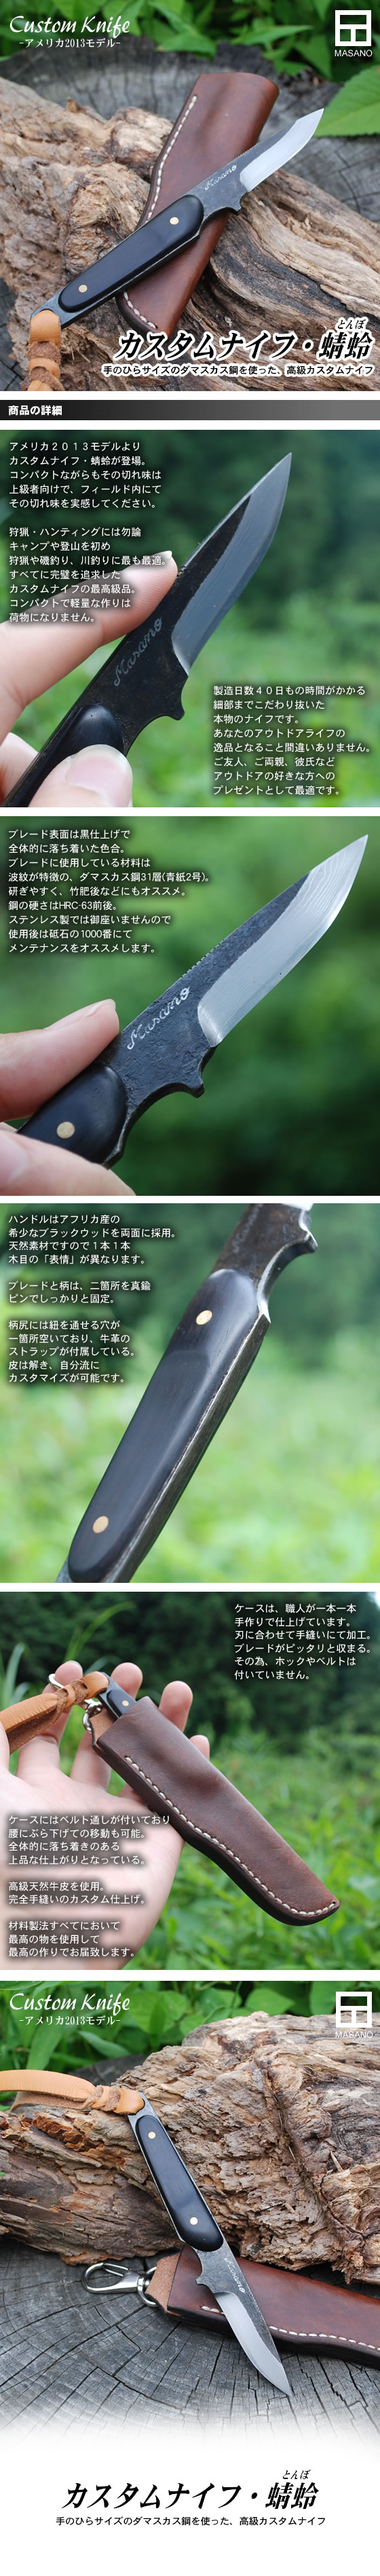 Custom Knife アメリカモデル2013 蜻蛉(とんぼ)